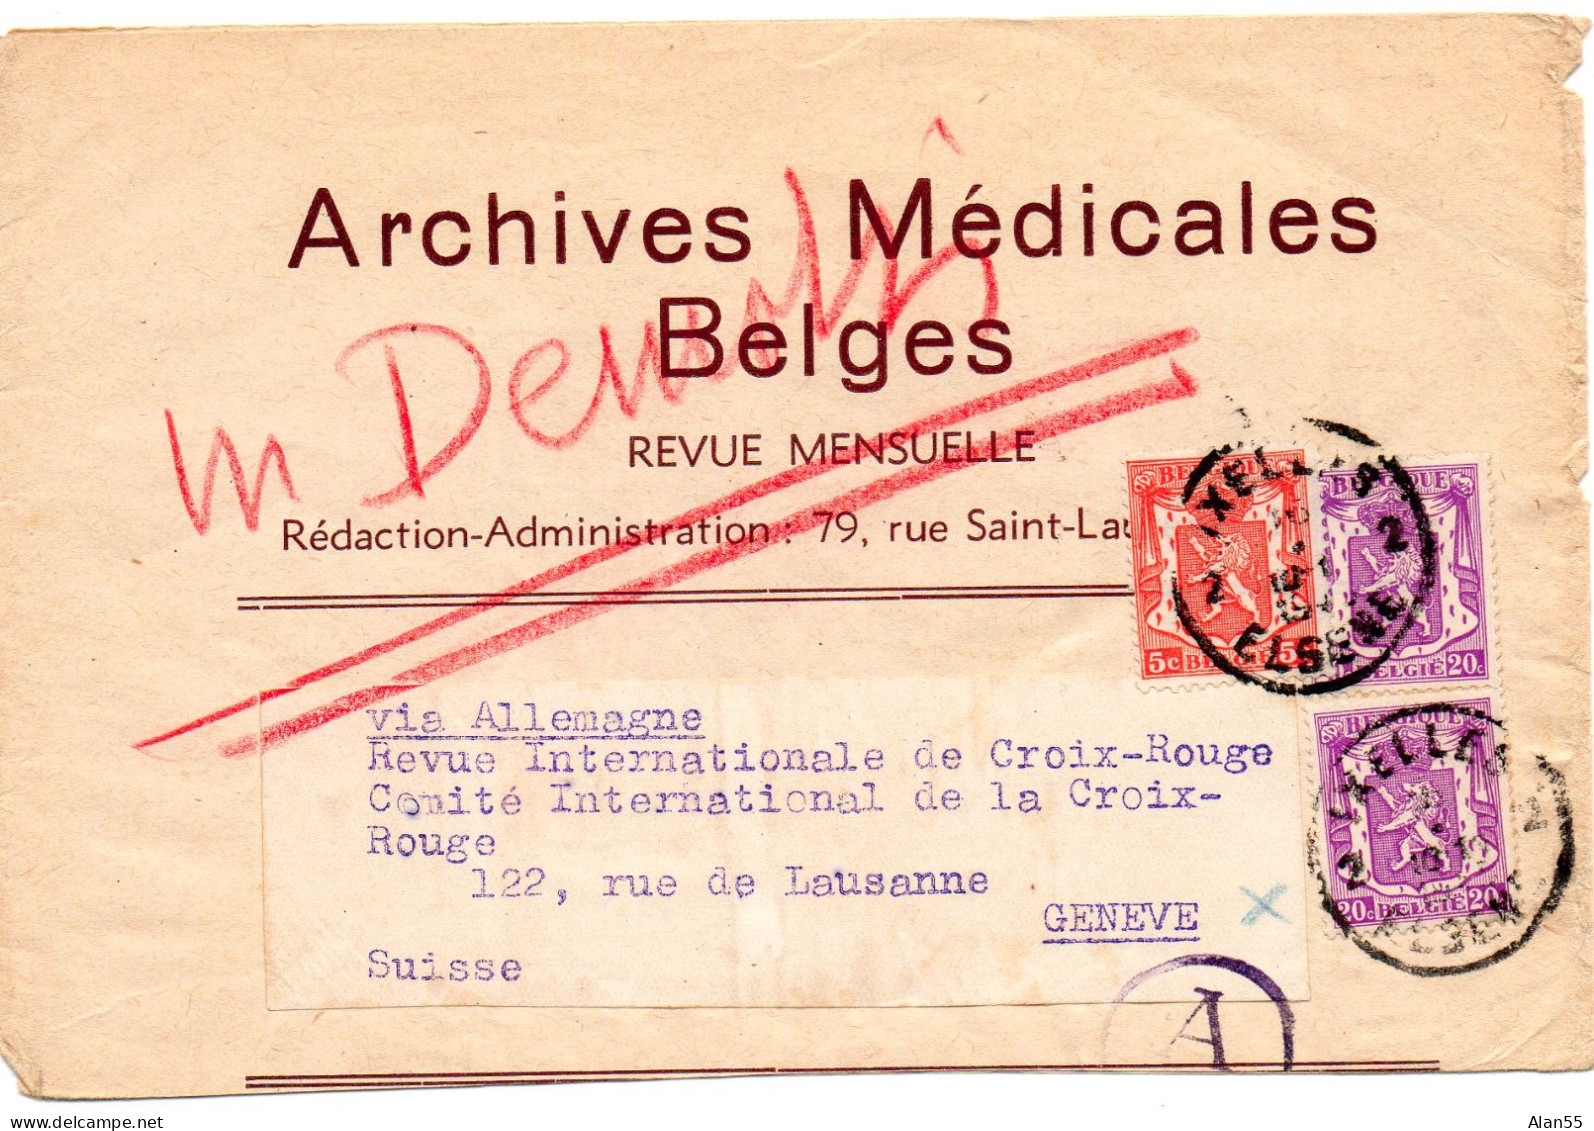 BELGIQUE.1941. "ARCHIVES MEDICALES BELGES". BANDE JOURNAL. CENSURE ALLEMANDE POUR LA SUISSE.Verso: Publicité. - Zeitungsmarken [JO]